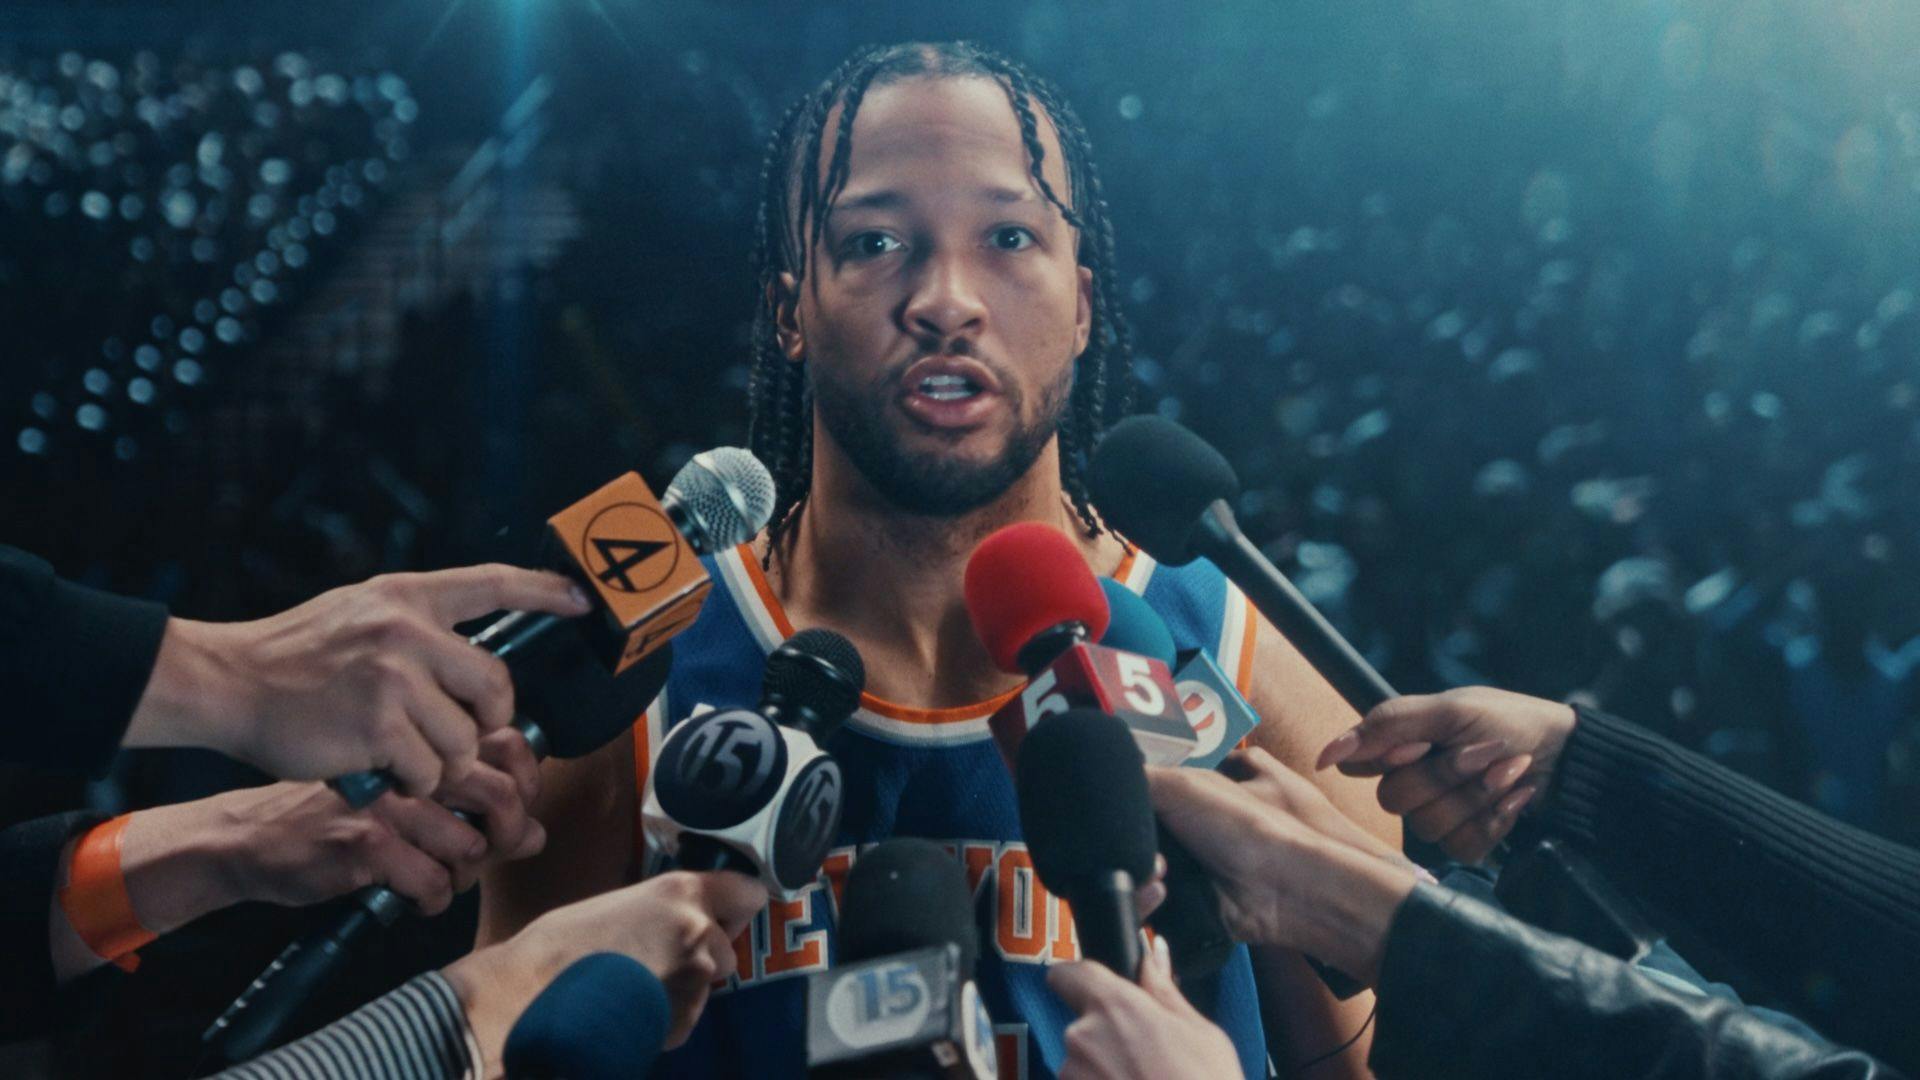 New York Knicks star Jalen Brunson pretends to answer questions as part of an NBA playoffs ad.